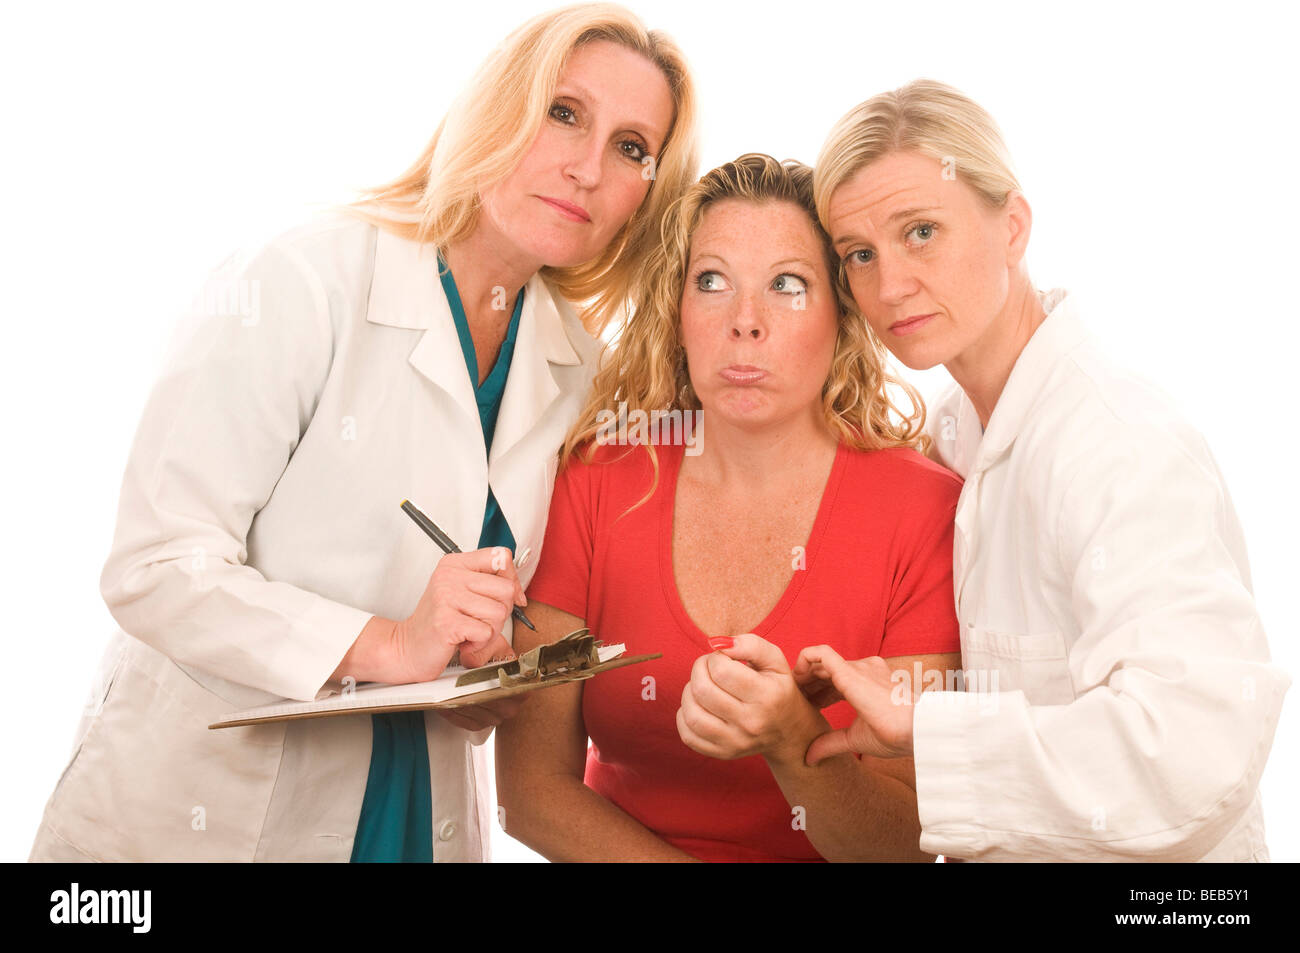 Trois infirmières infirmière de l'équipe dame Dames Femmes Groupe d'équipe assez patient test de pression du sang bureau hôpital lire l'aide de lecture Banque D'Images